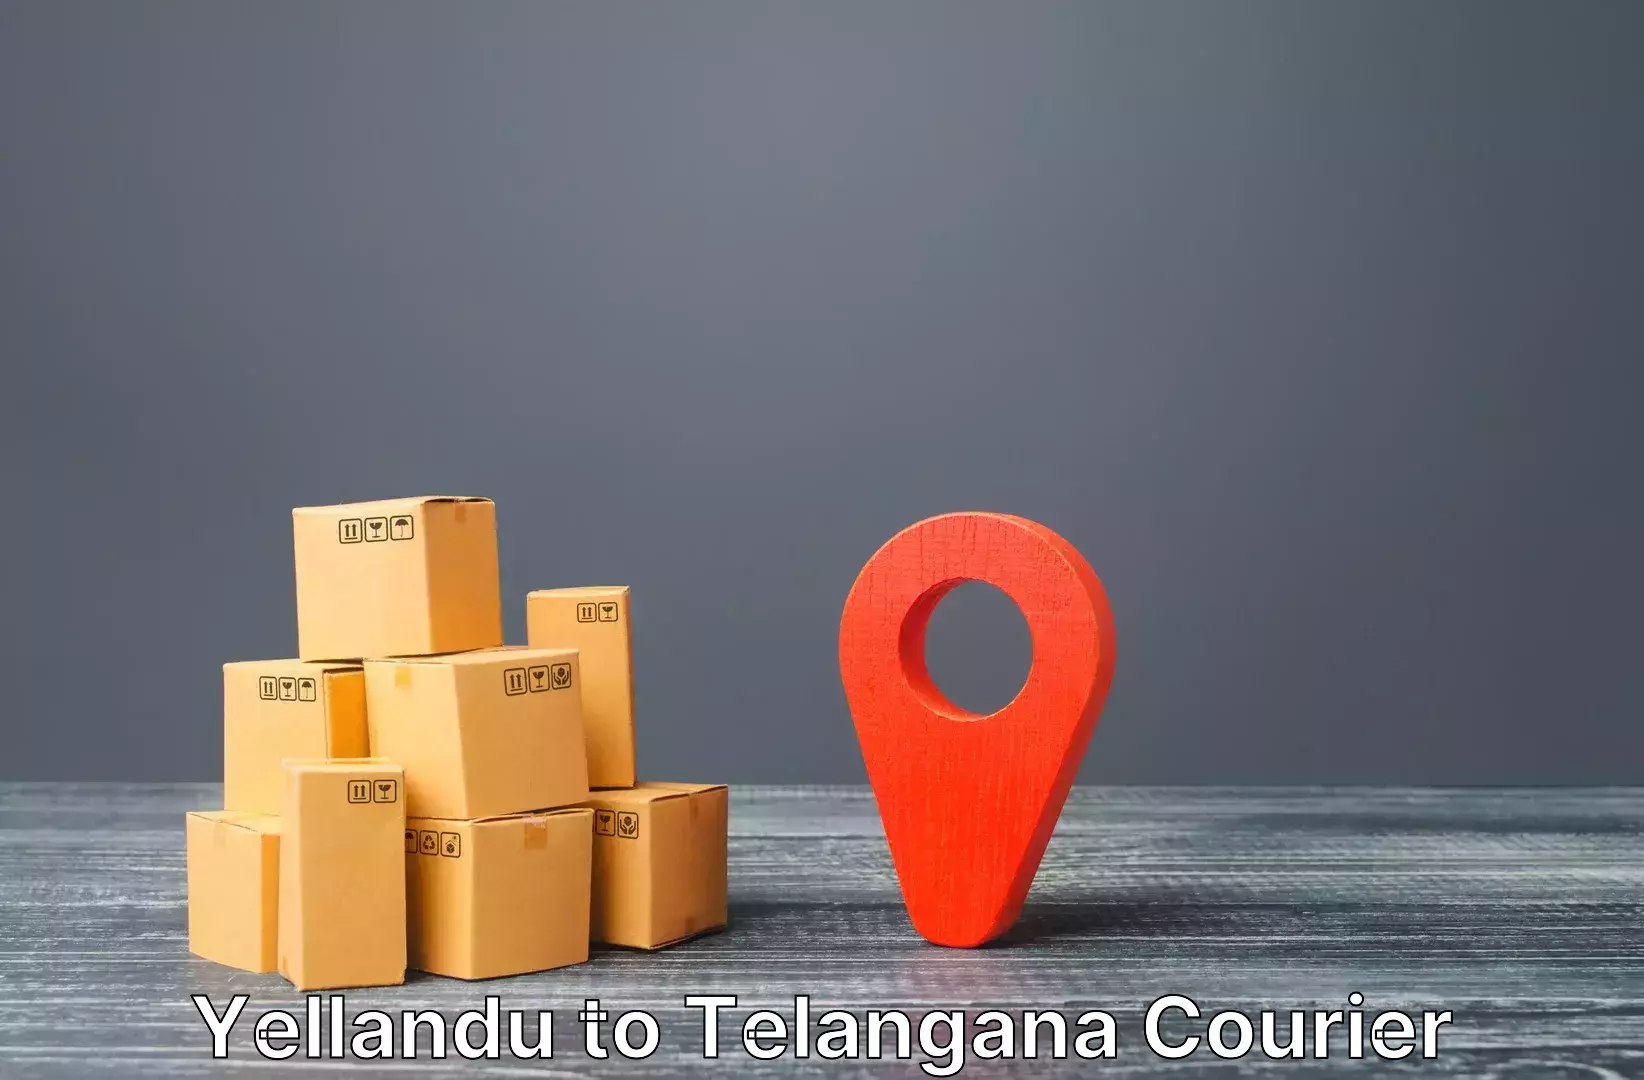 Baggage transport scheduler Yellandu to Telangana